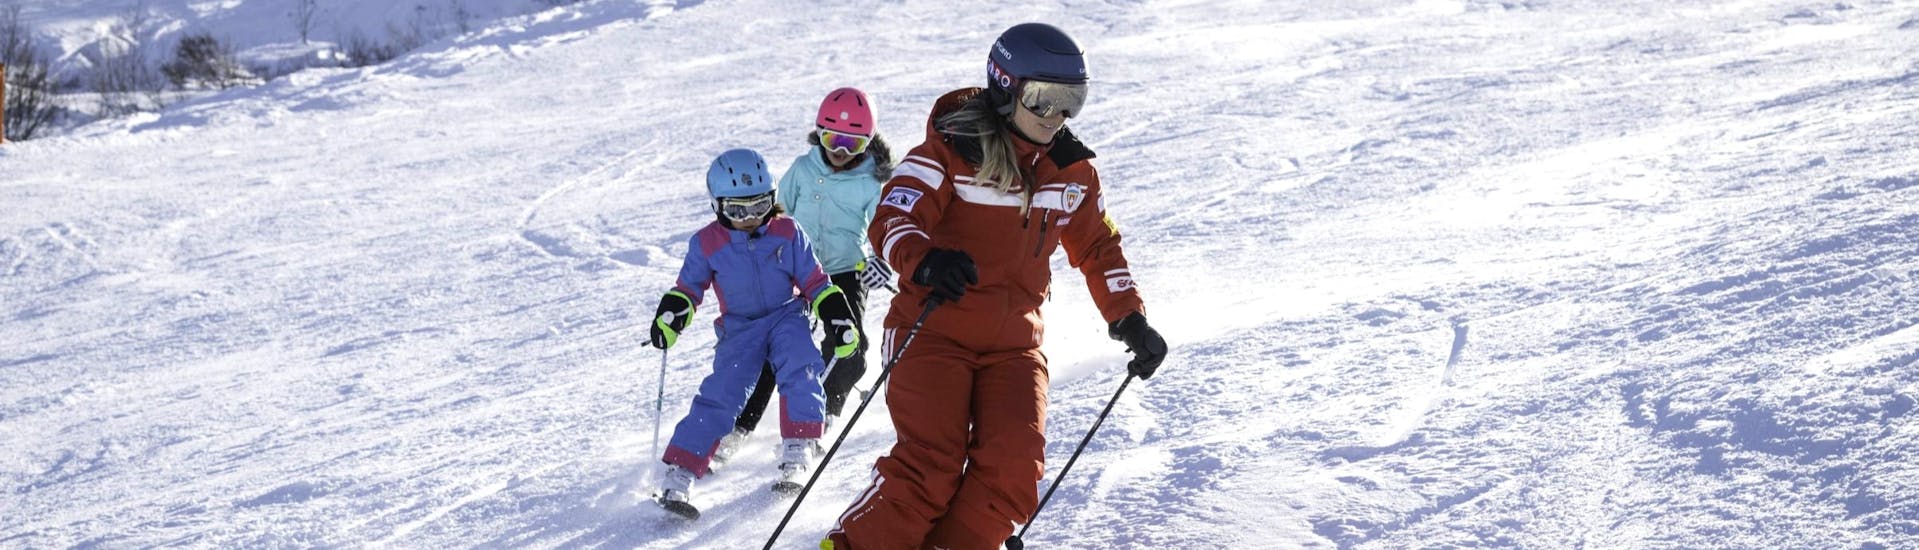 Lezioni di sci per bambini a partire da 3 anni.